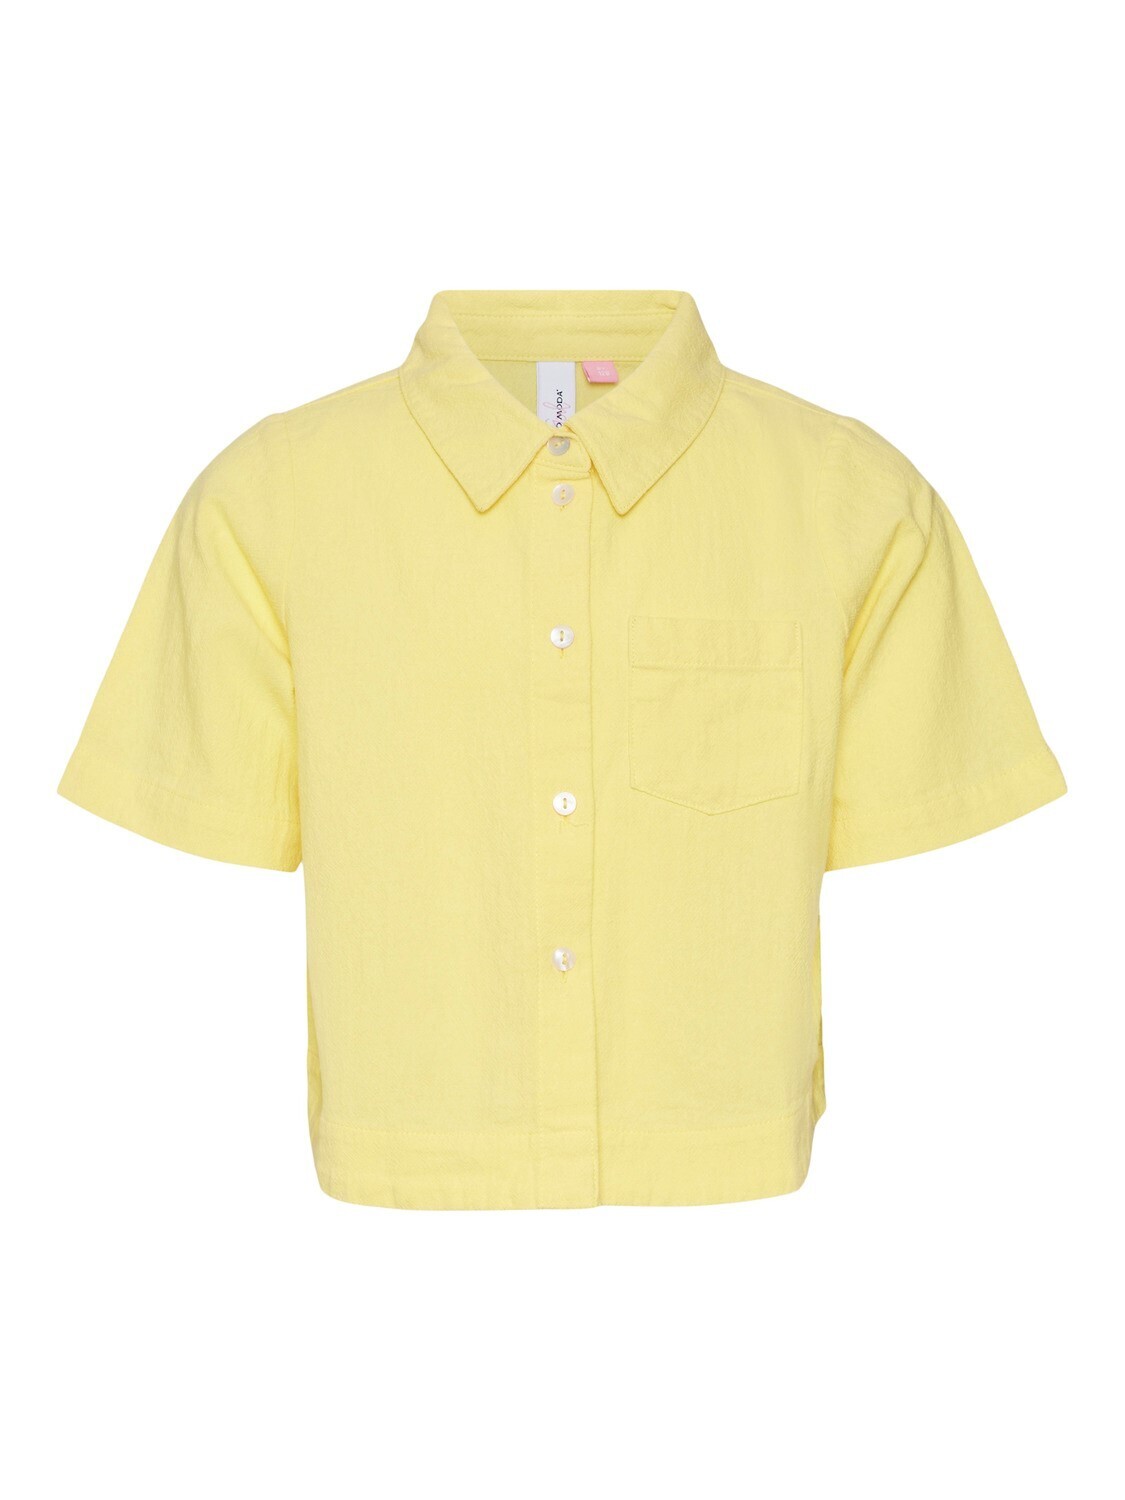 KIDS shirt tetra - HART - lemon zest